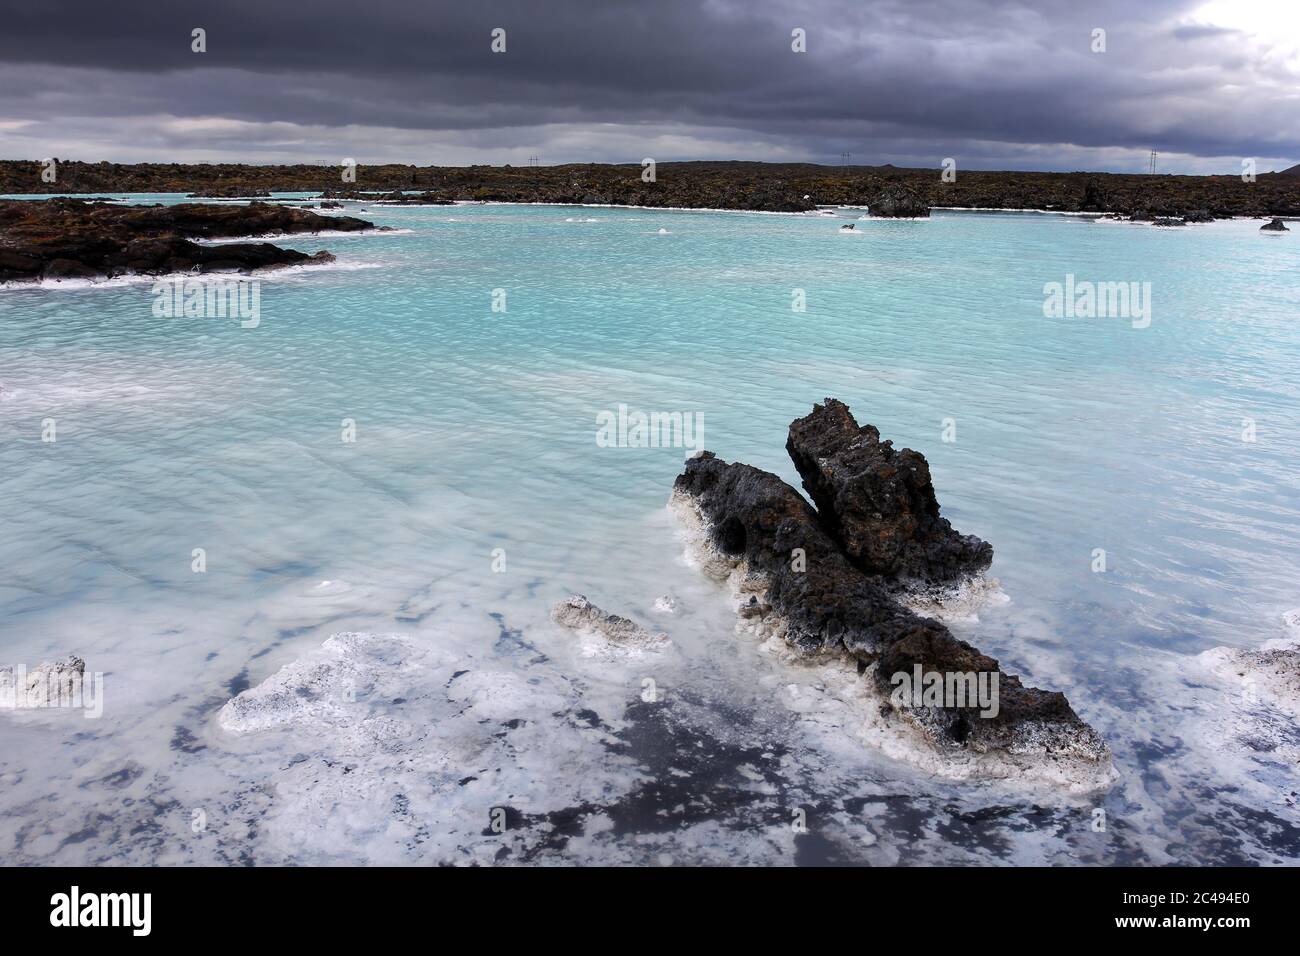 La Laguna Azul es una piscina artificial y spa alimentado por las aguas residuales de una central geotérmica en los campos de lava cerca de Grindavik, Islandia. La su azul Foto de stock